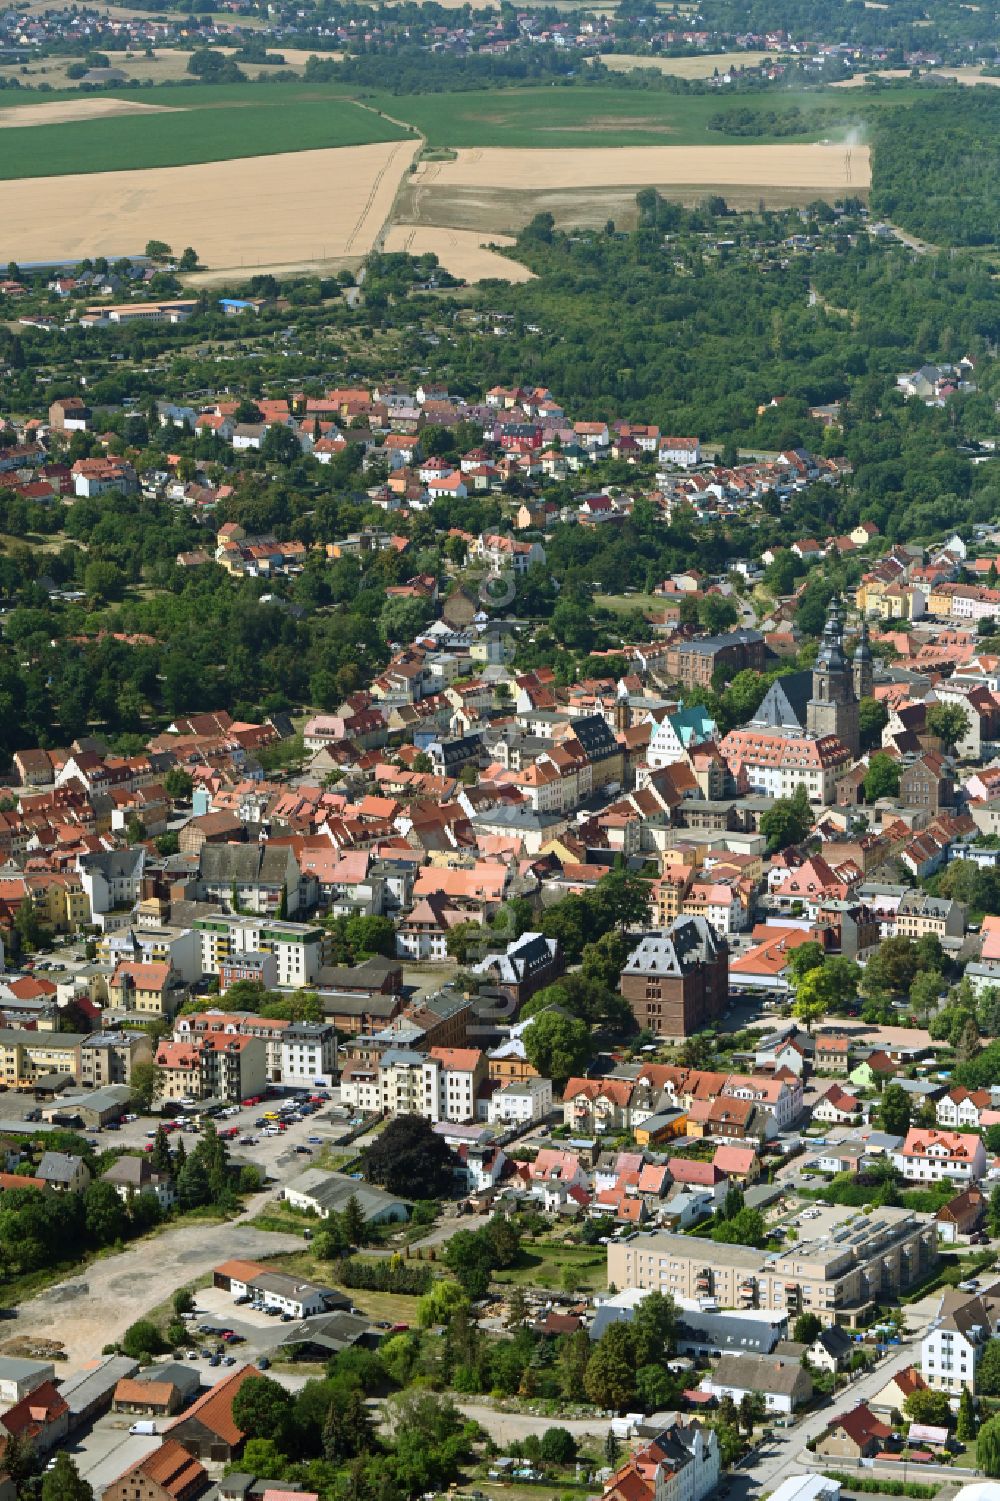 Luftbild Lutherstadt Eisleben - Stadtansicht des Innenstadtbereiches derLutherstadt Eisleben im Bundesland Sachsen-Anhalt